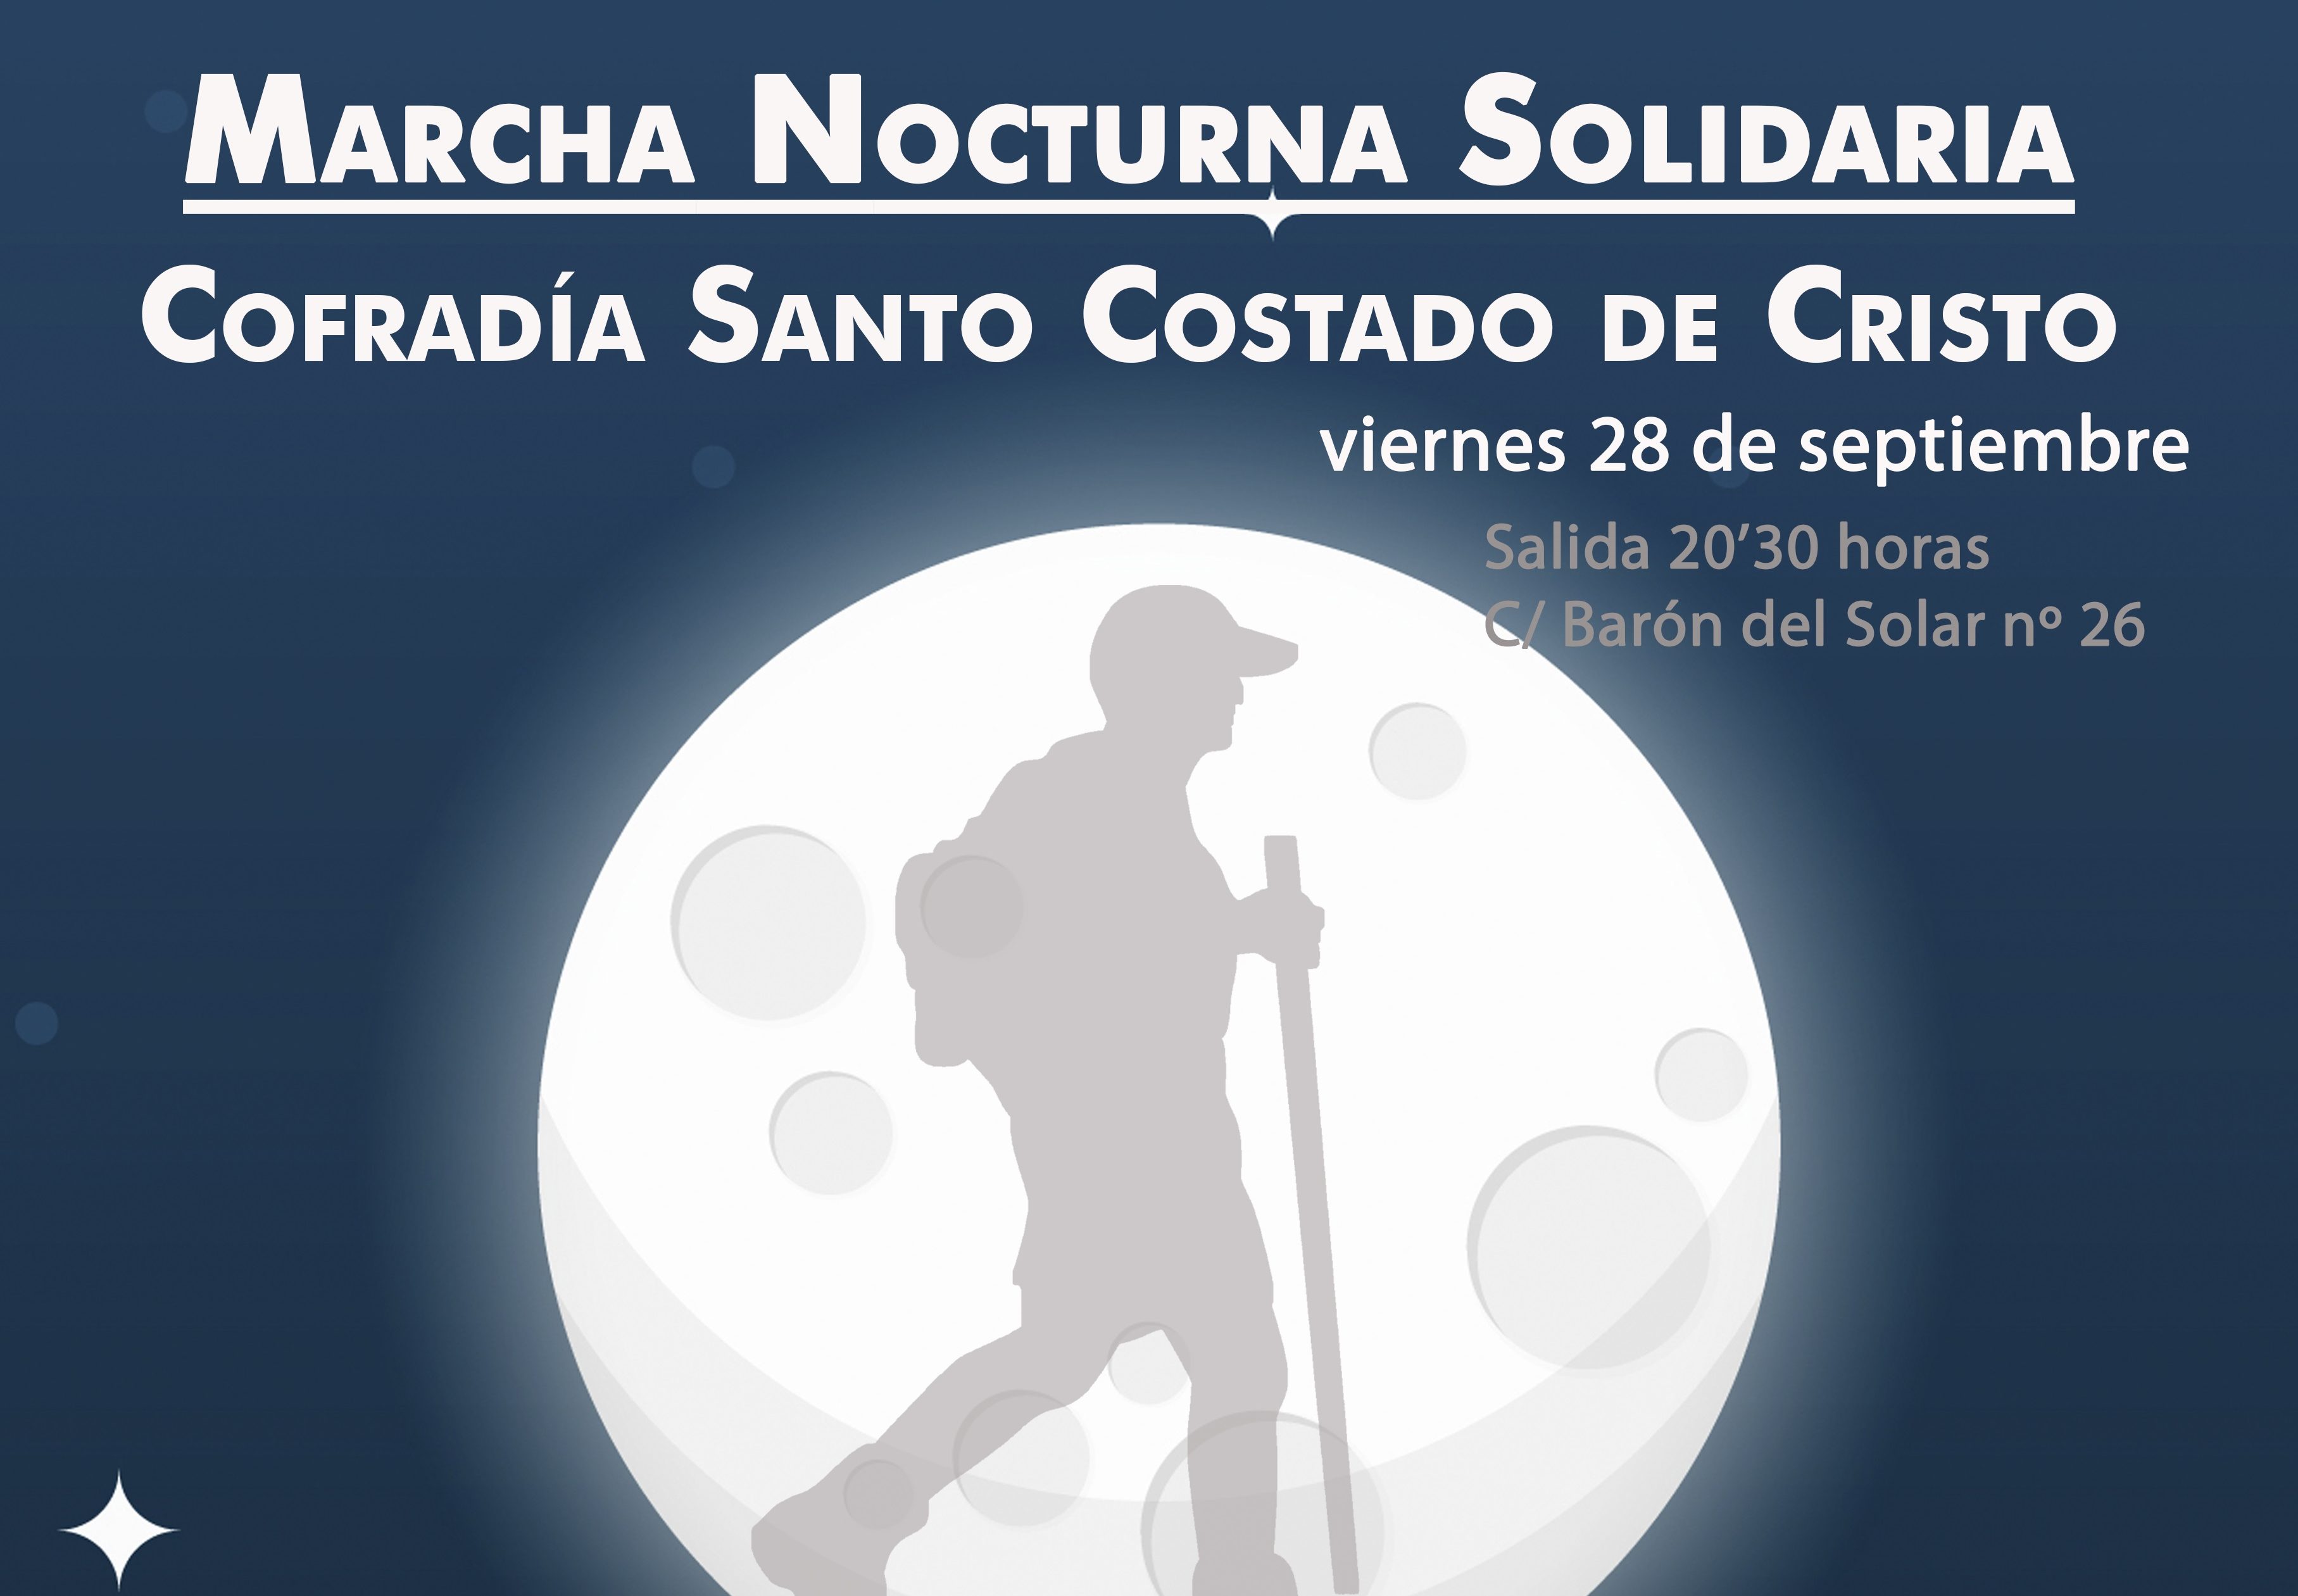 La marcha nocturna de El Santo Costado será el viernes 28